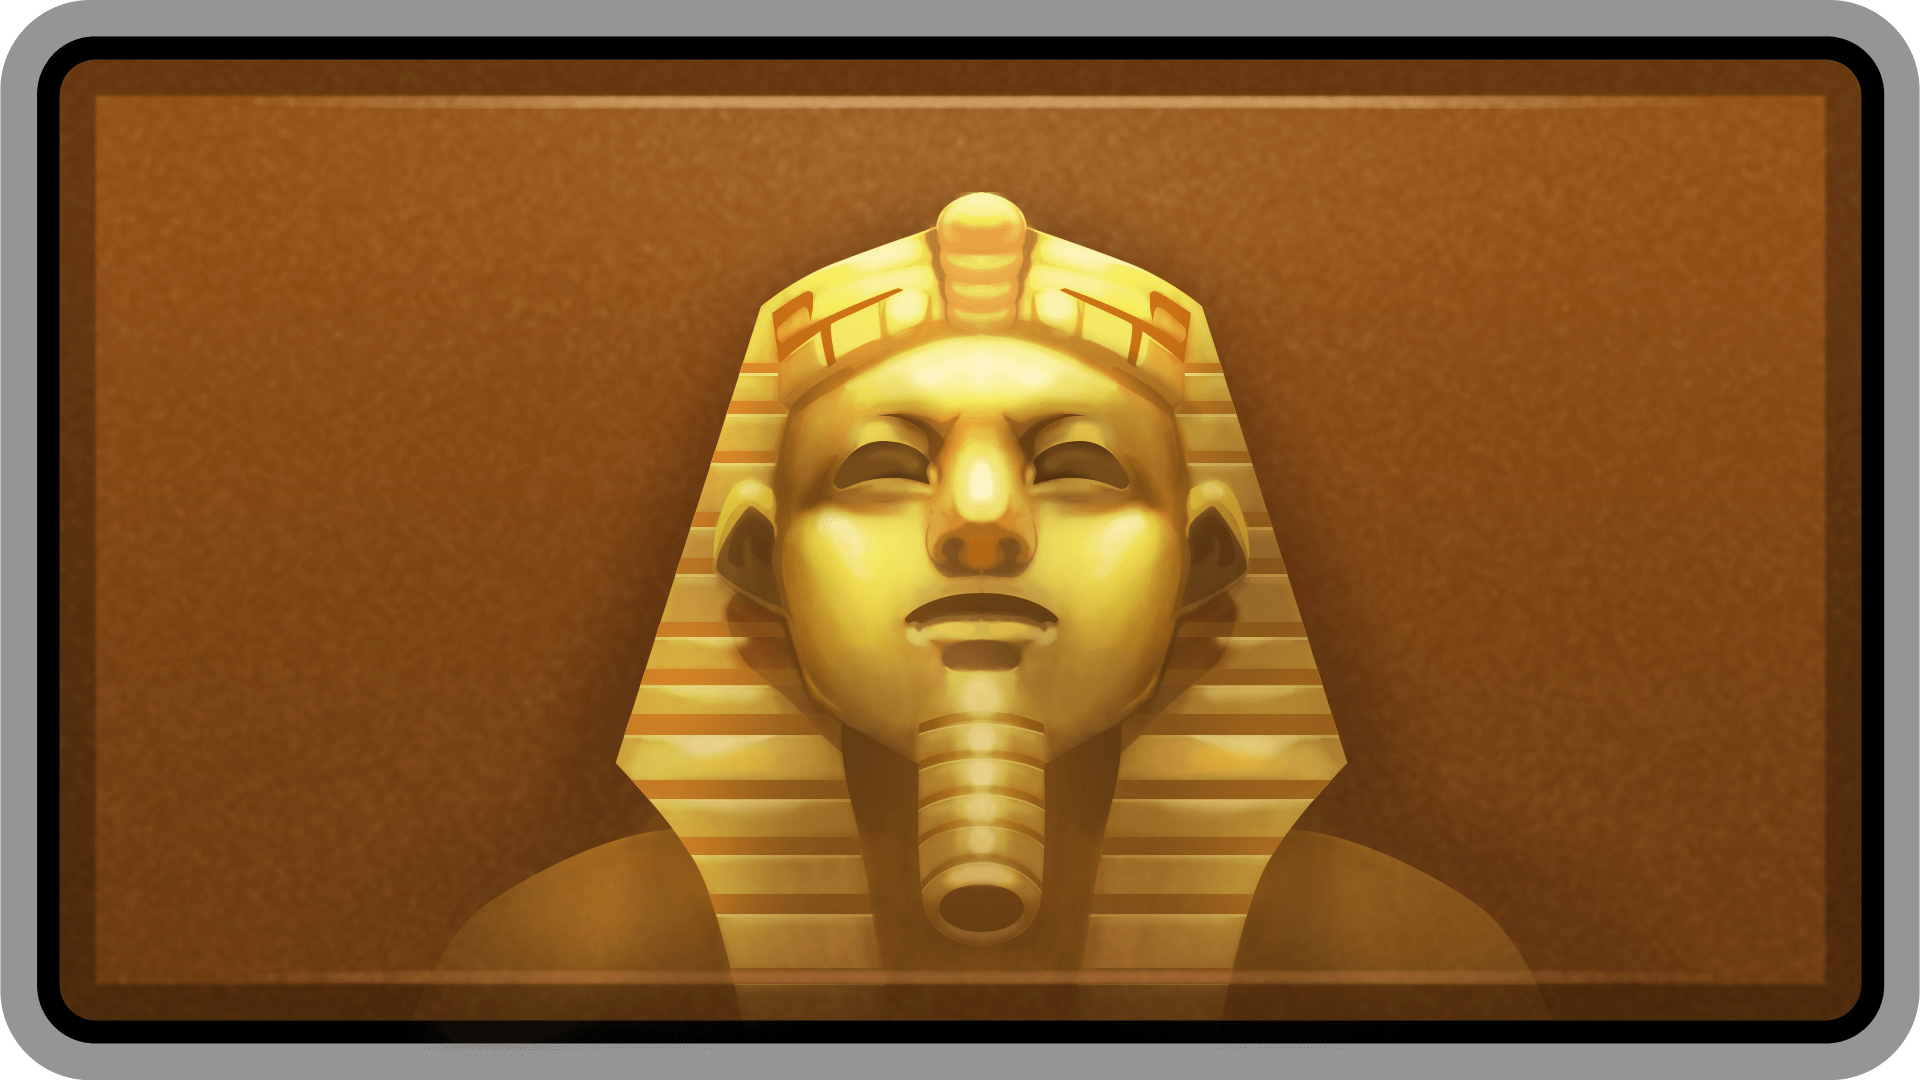 Golden Pharaoh